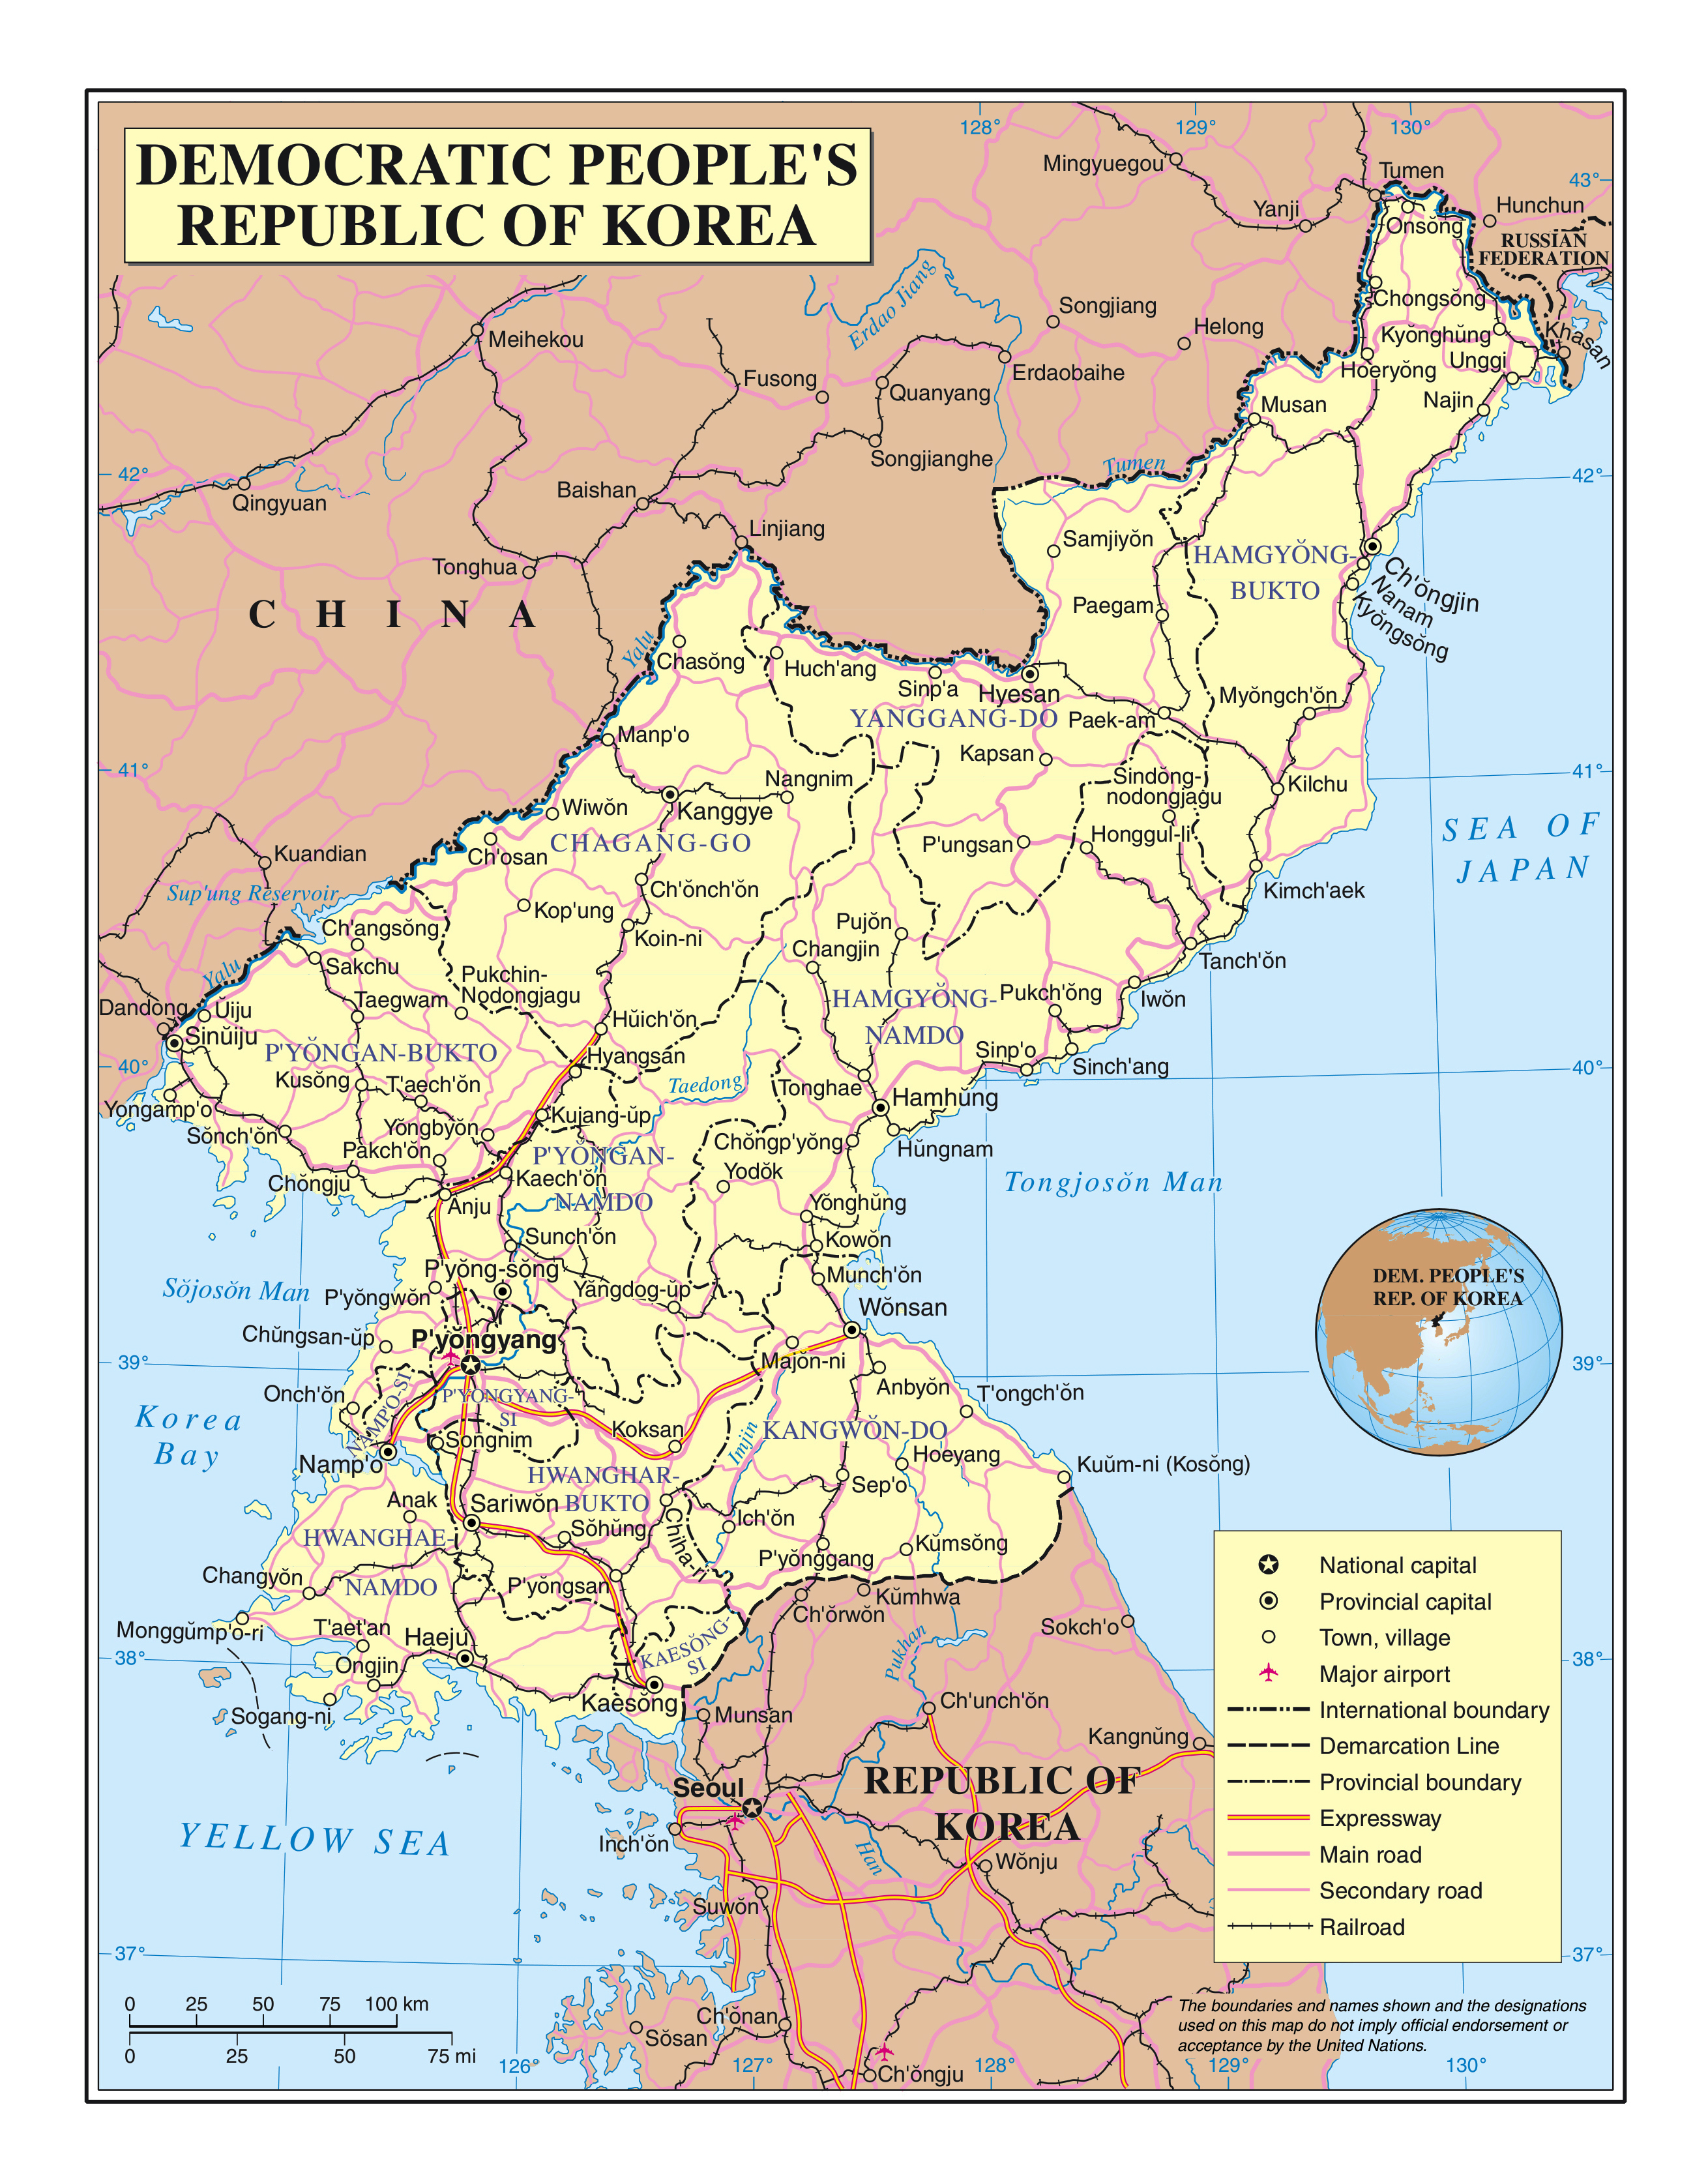 Большая детальная политическая и административная карта Северной Кореи (КНДР)с дорогами, железными дорогами, городами и аэропортами